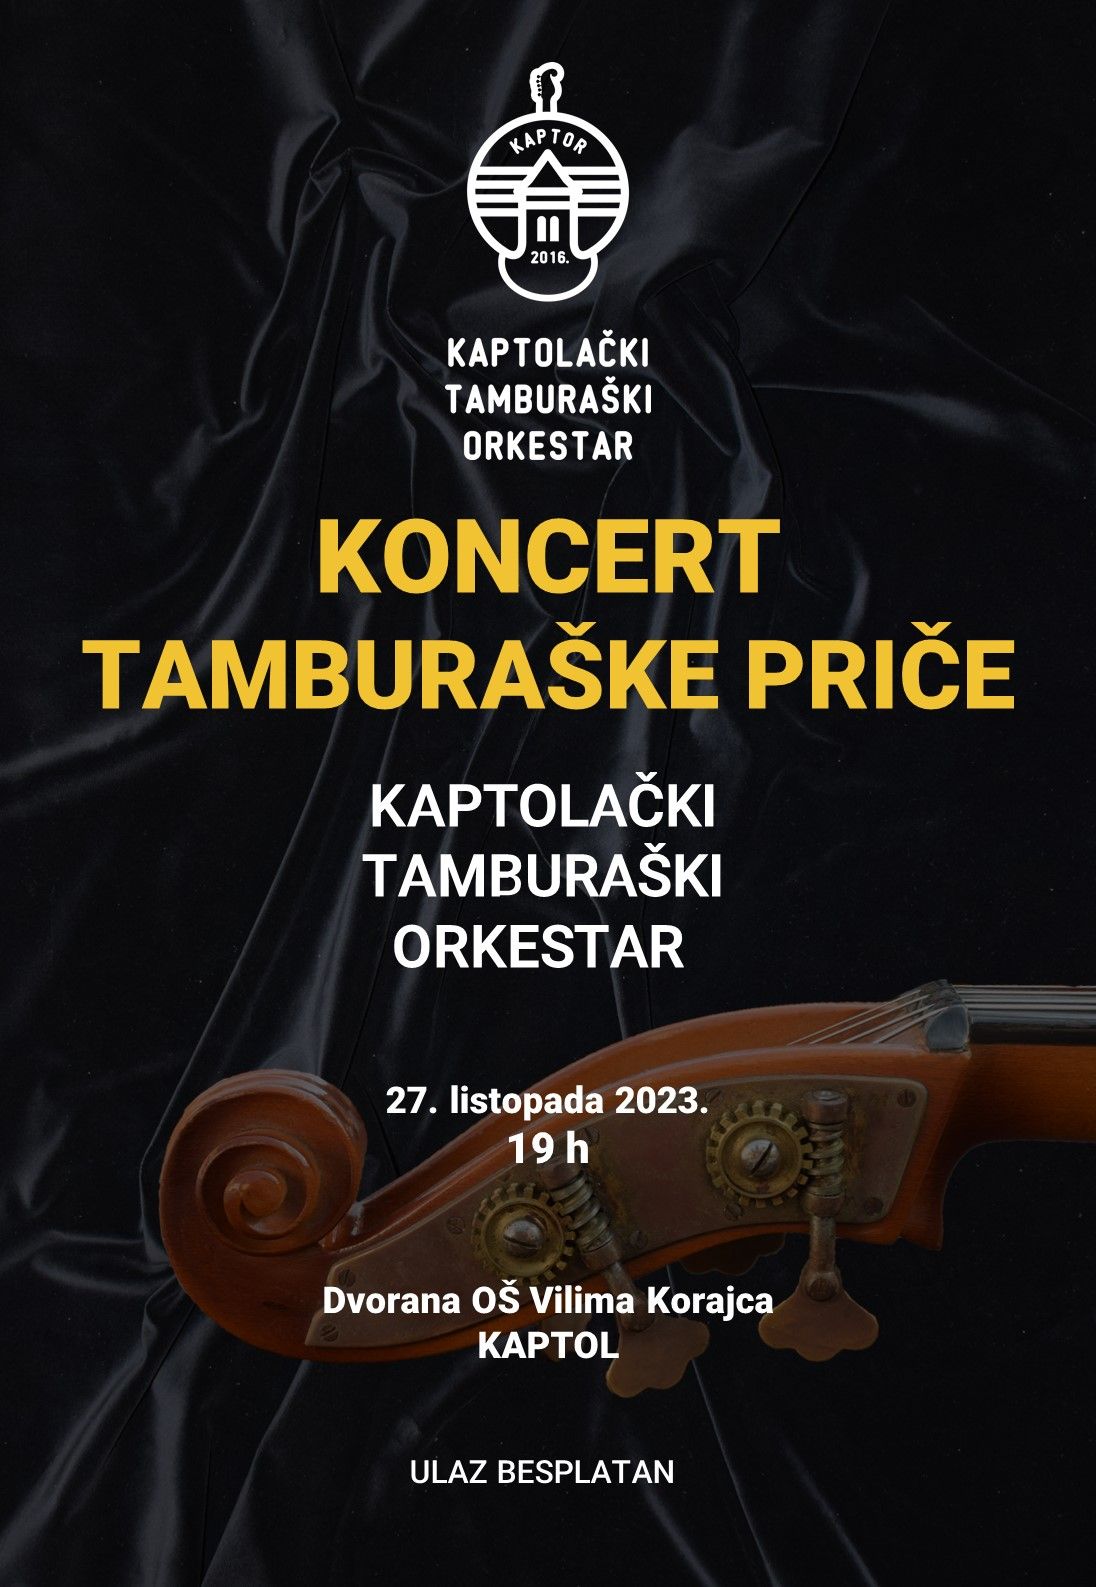 Godišnji koncert Kaptolačkog tamburaškog orkestra